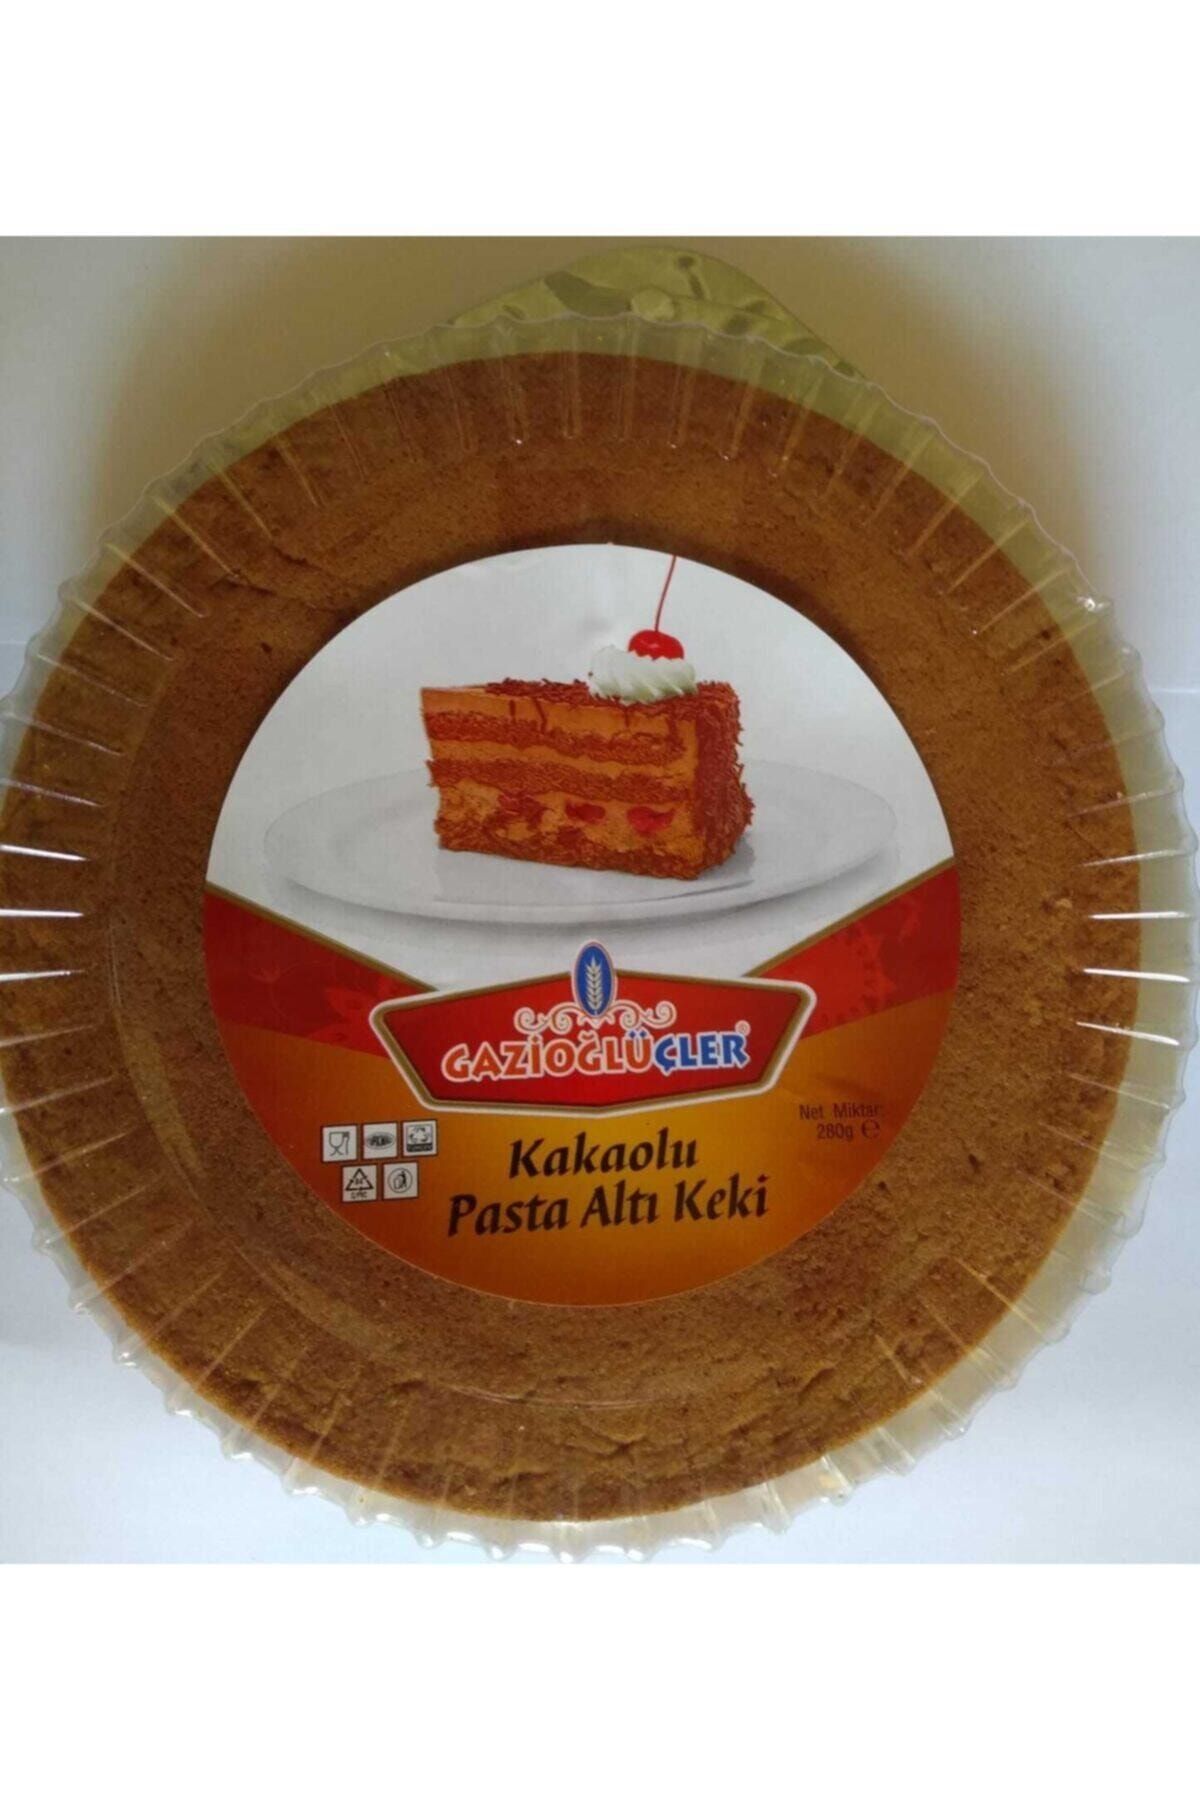 GAZİOĞLU ÜÇLER Pasta Altı Tabanı Keki 280 gr Kakaolu